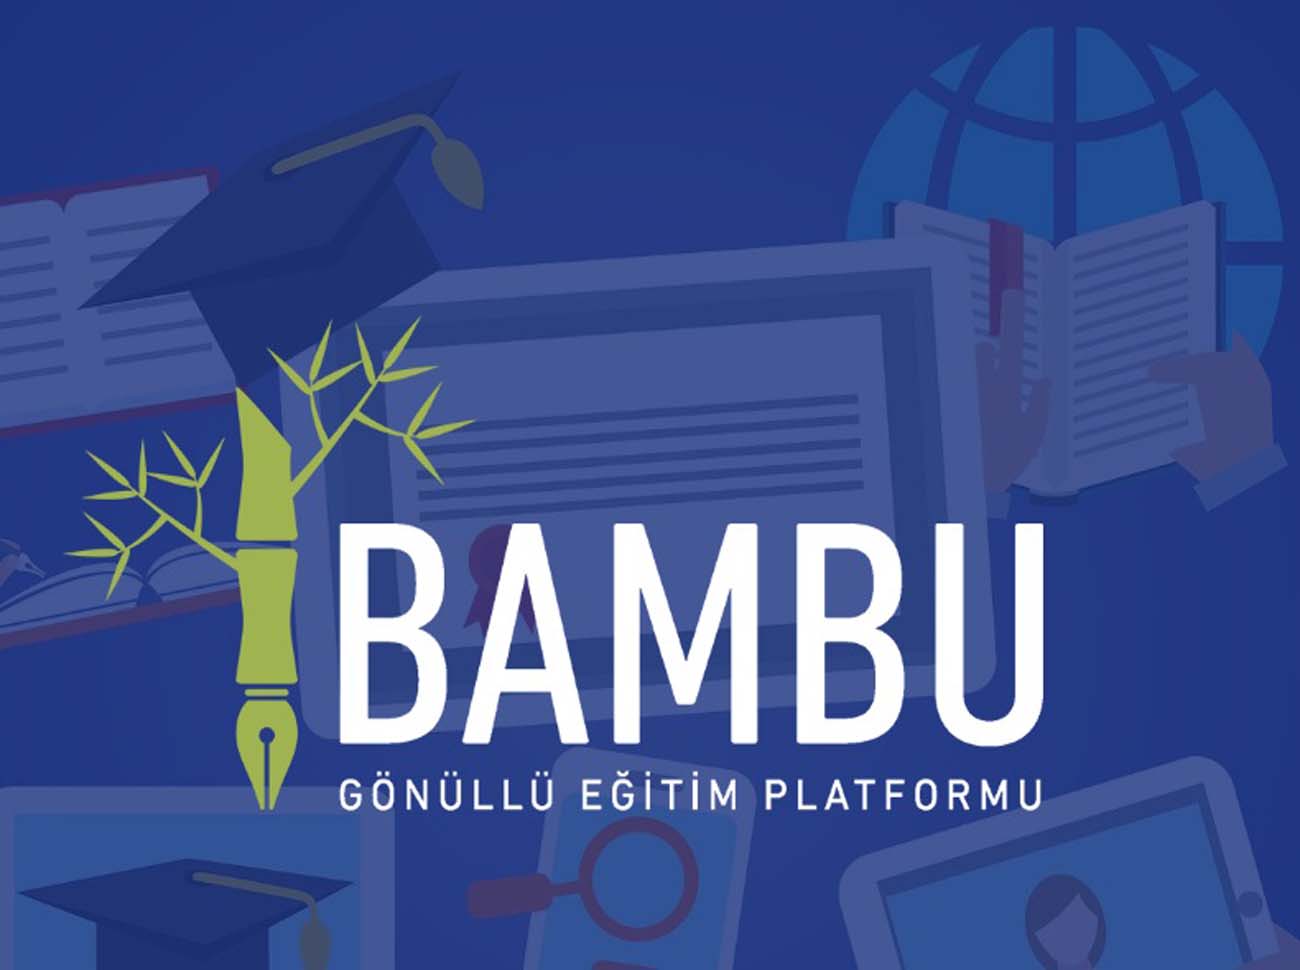 Bambu Gönüllü Eğitim Platformu